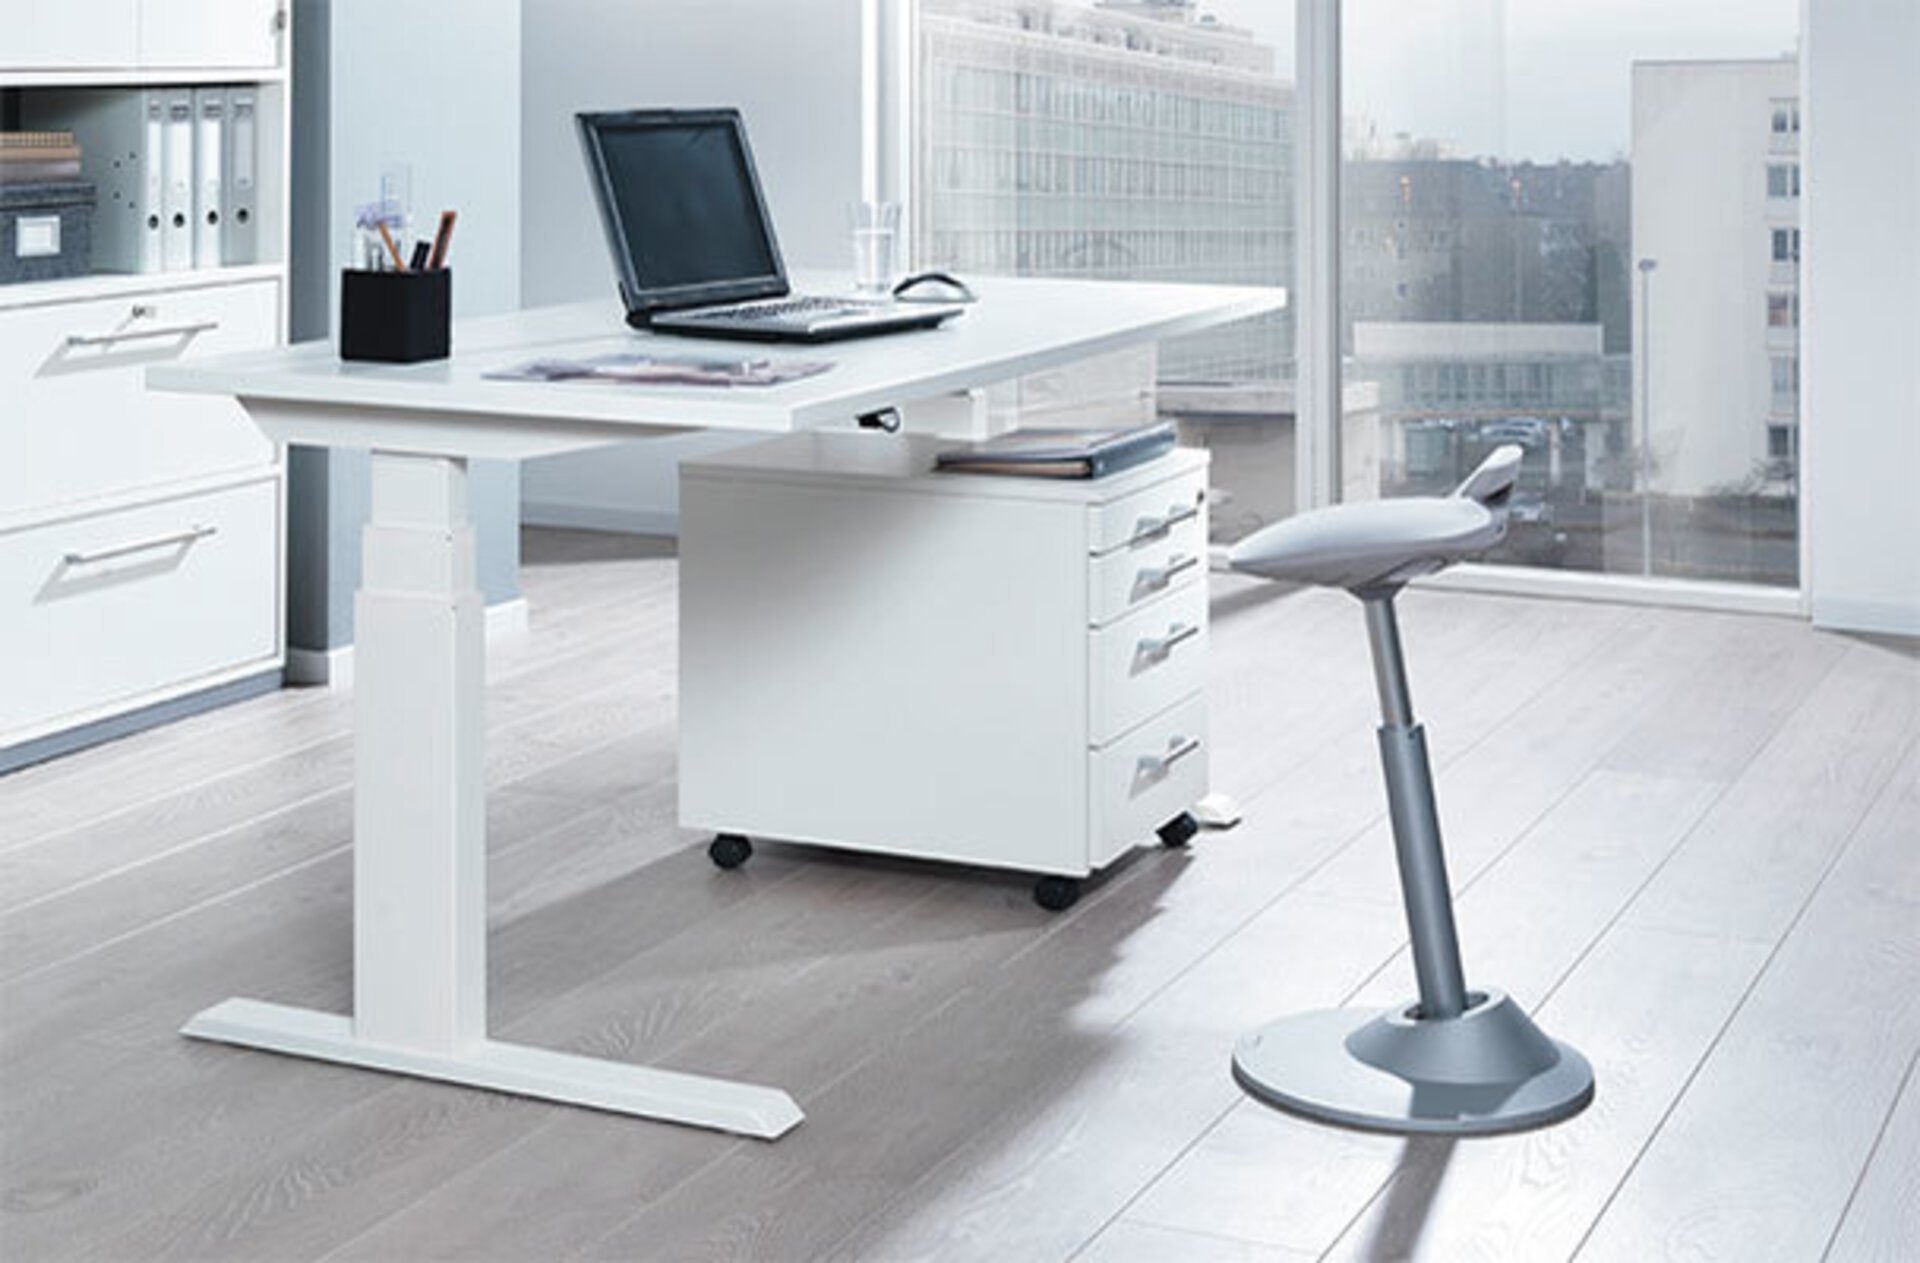 Weißer höhenverstellbarer Schreibtisch und davor ein grauer , höhenverstellbarer Sitzhocker in ergonomischer Form. Das Bild dient als zweites Milieubild für den Bereich Inspiration "Der richtige Bürostuhl".